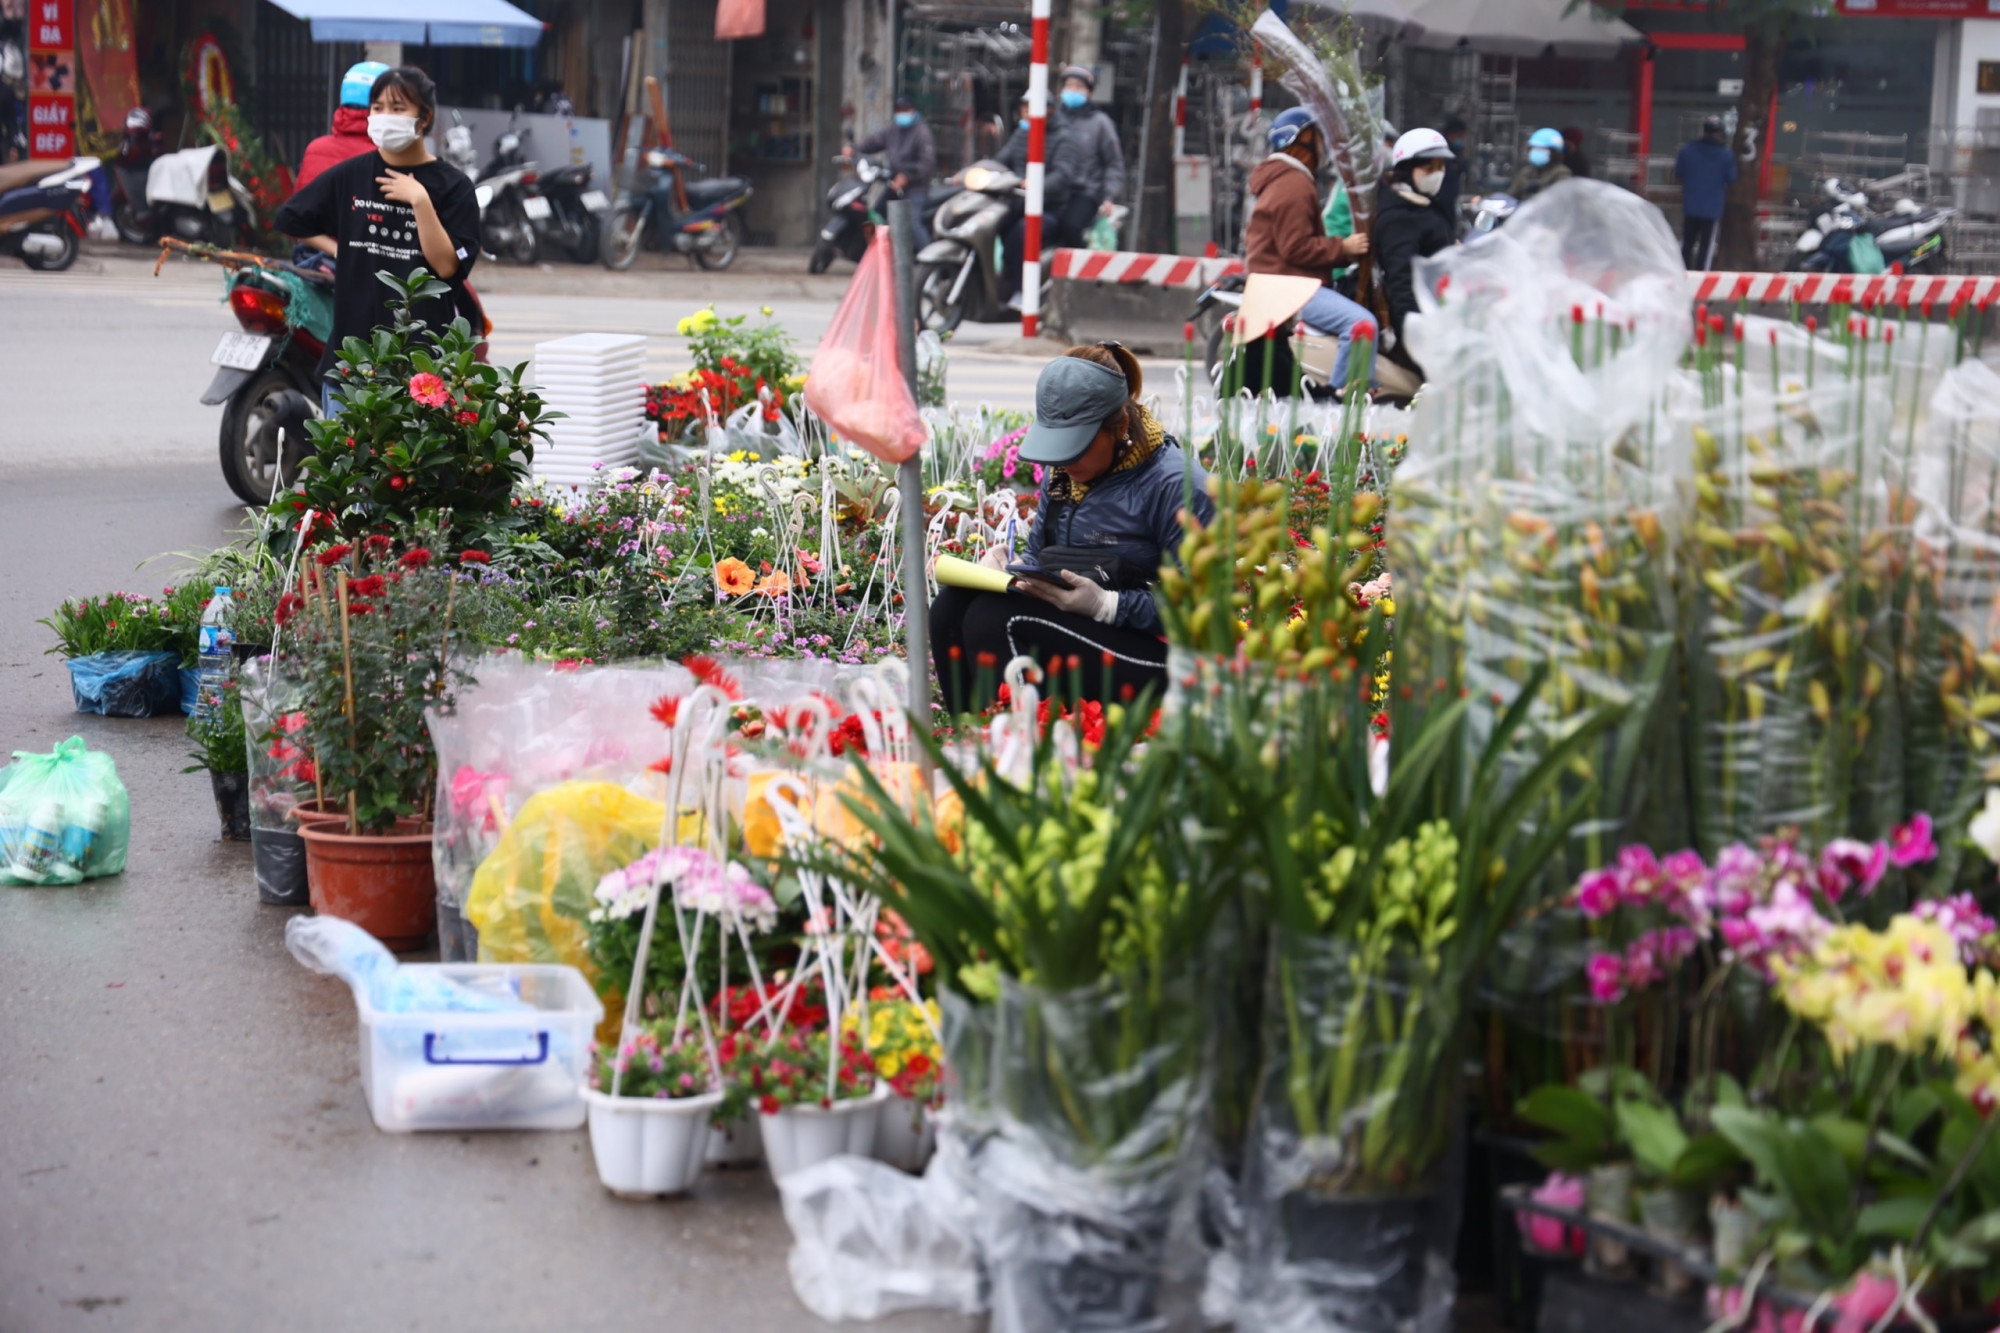 Ngã tư Hoàng Hoa Thám - Lạc Long Quân là điểm bán cây nổi tiếng của Hà Nội. Những ngày cuối tuần vừa qua người dân đổ về đây mua cây rất nhiều.